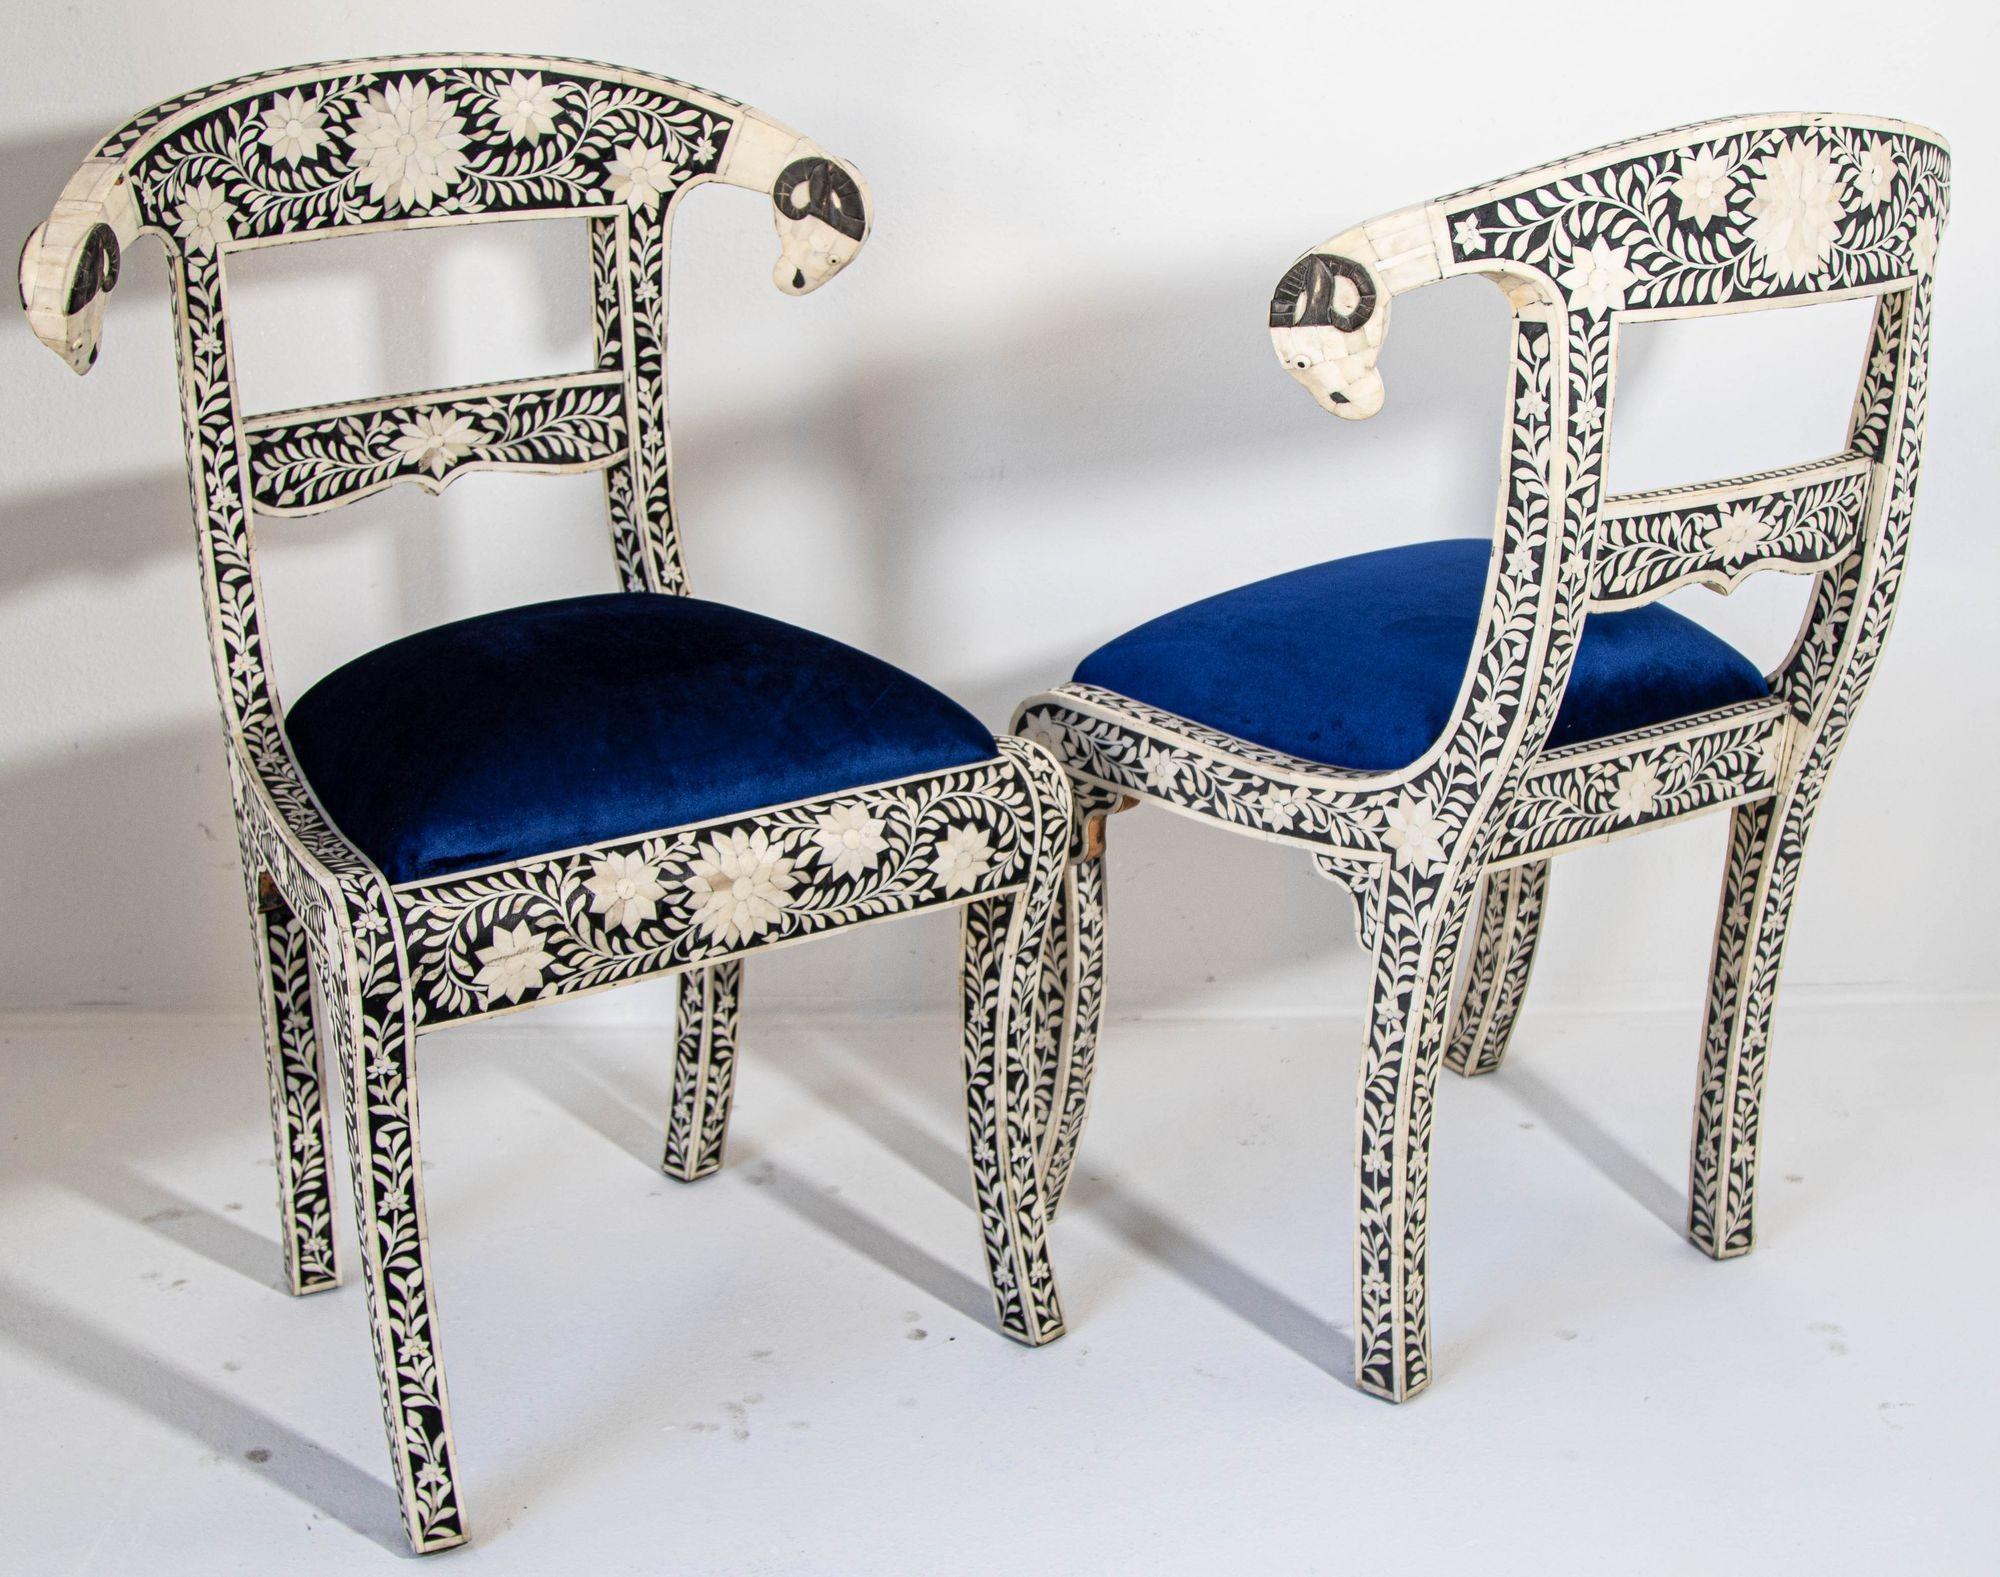 Paar antike anglo-indische Beistellstühle mit Widderkopf-Knochenintarsie und königsblauem Sitz.
Anglo-indischer schwarz-weißer Mitgiftstuhl mit Widderkopf.
Dieser atemberaubende Stuhl verfügt über einen Holzrahmen mit Intarsien aus komplizierten und